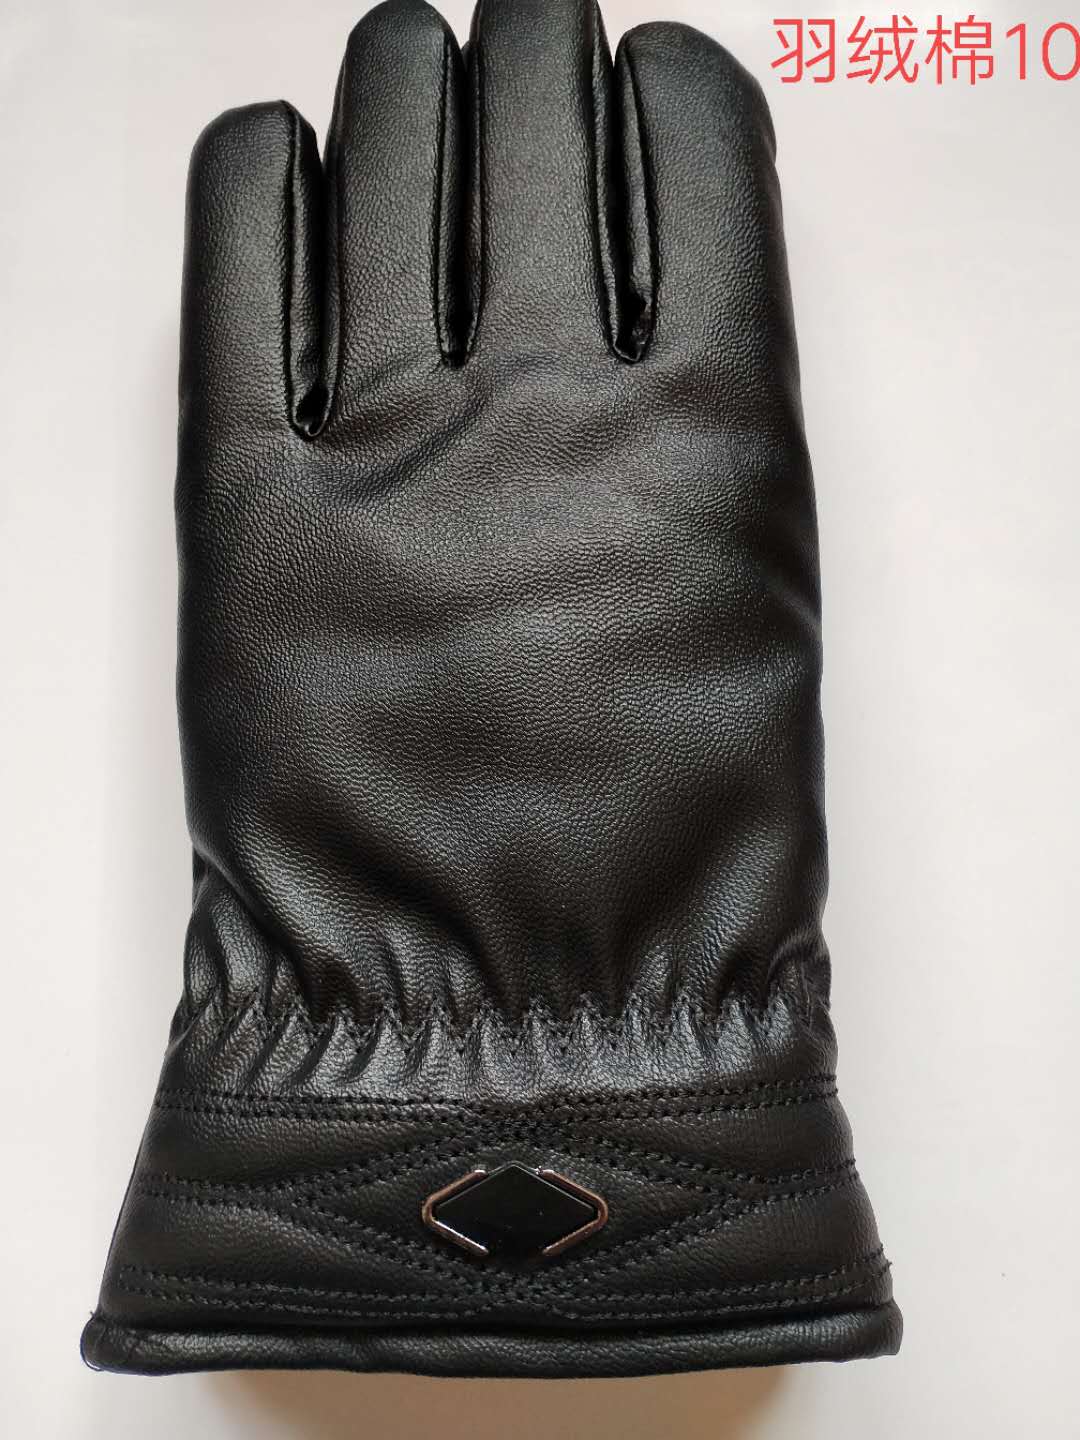 防滑防滑加厚休闲保暖手套款式多样价格面议155休闲保暖手套款式多样价格面议154详情图1